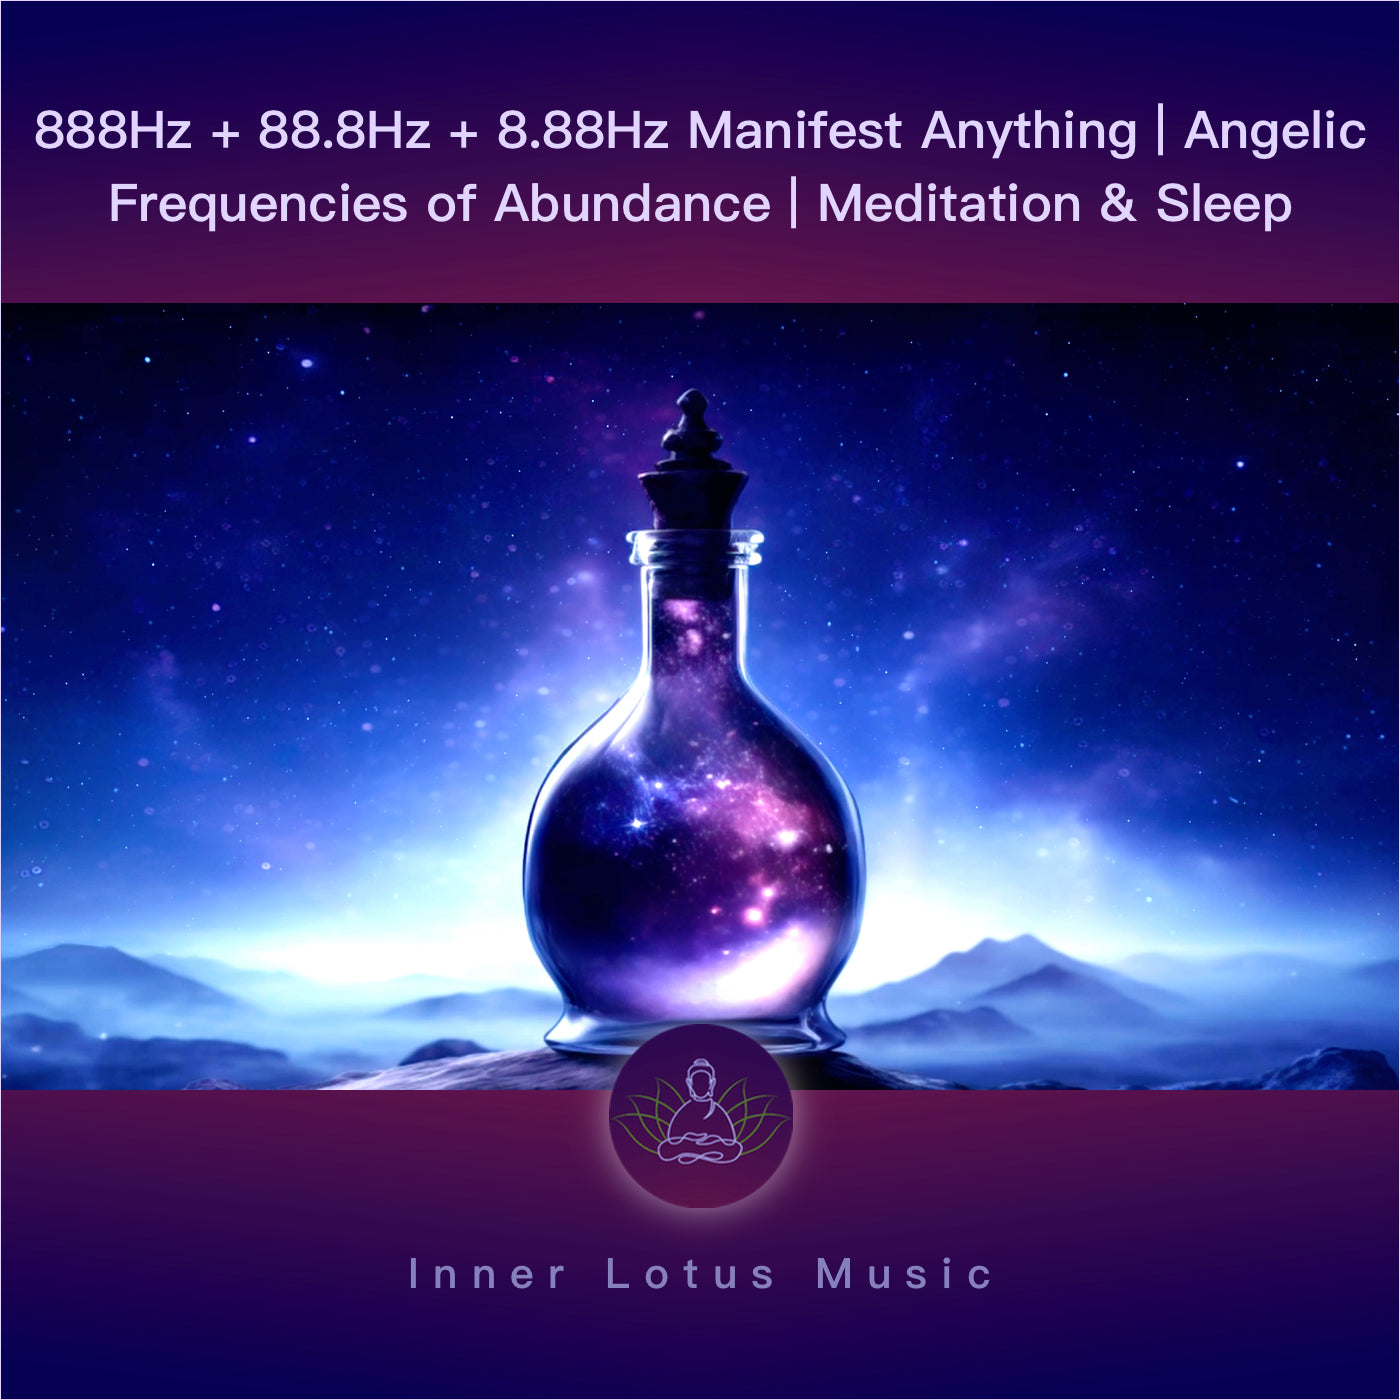 888Hz + 88.8Hz + 8.88Hz Manifest Anything | Angelic Frequencies of Abundance | Meditation & Sleep